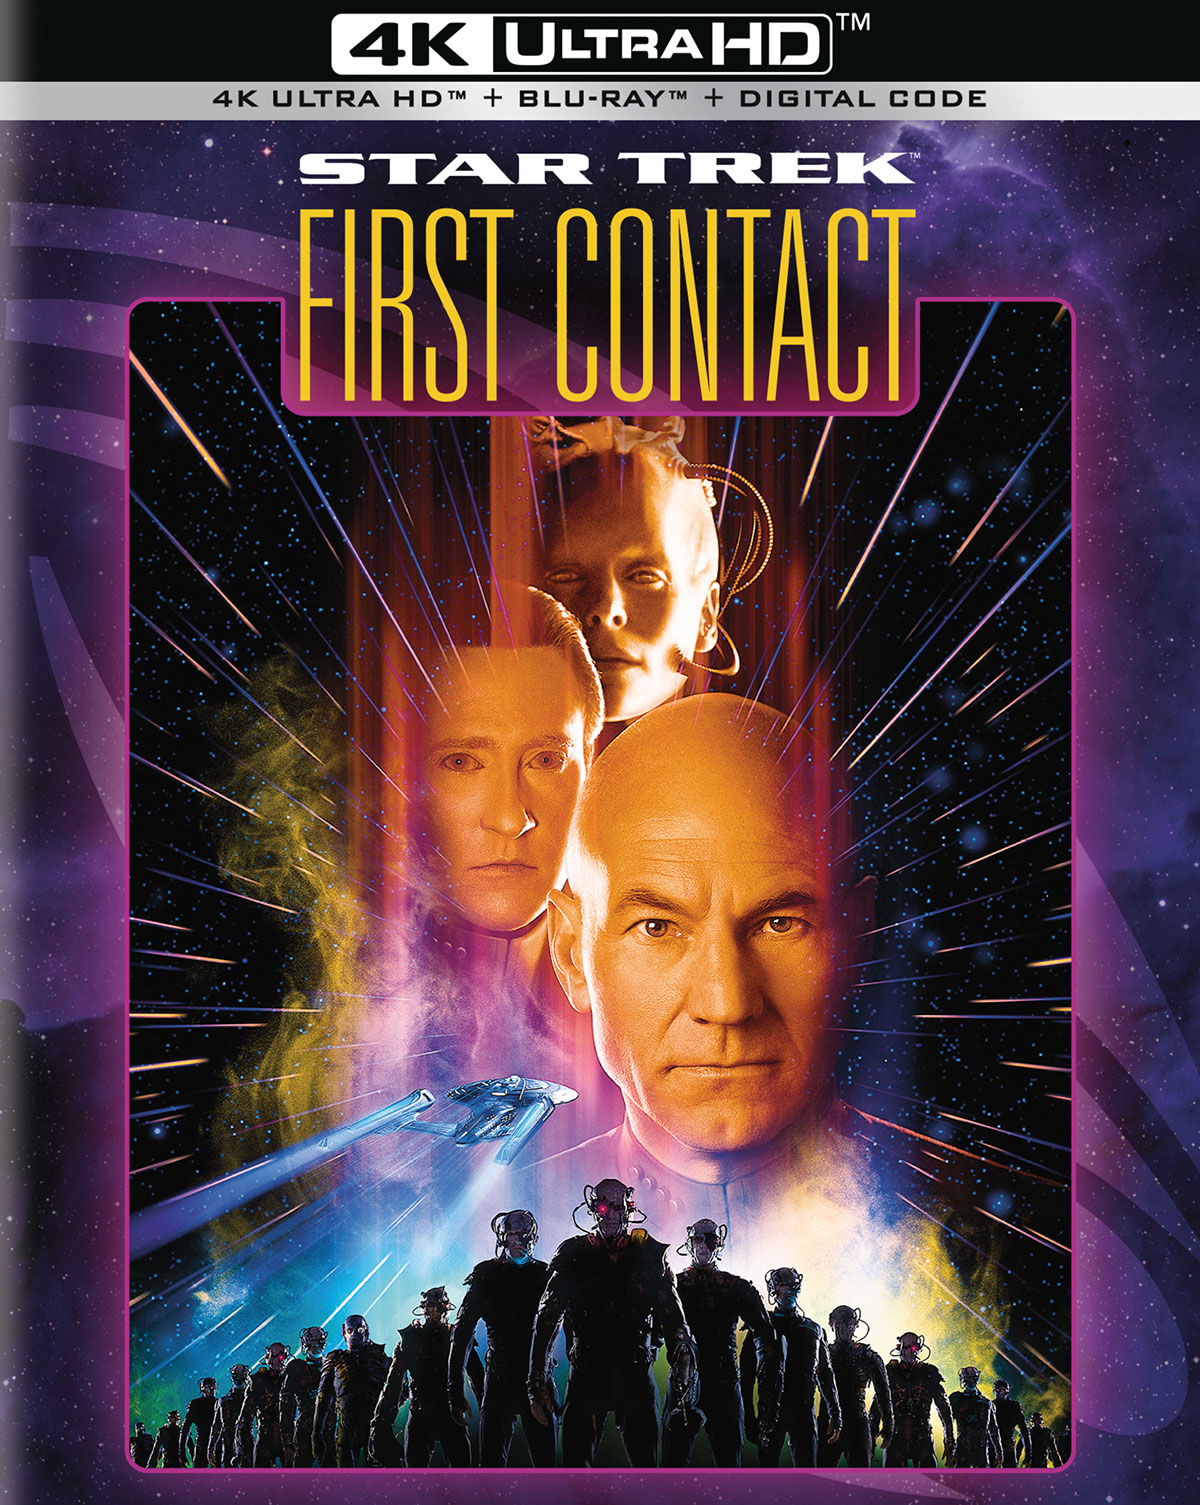 Star Trek: First Contact 4K Ultra HD cover art